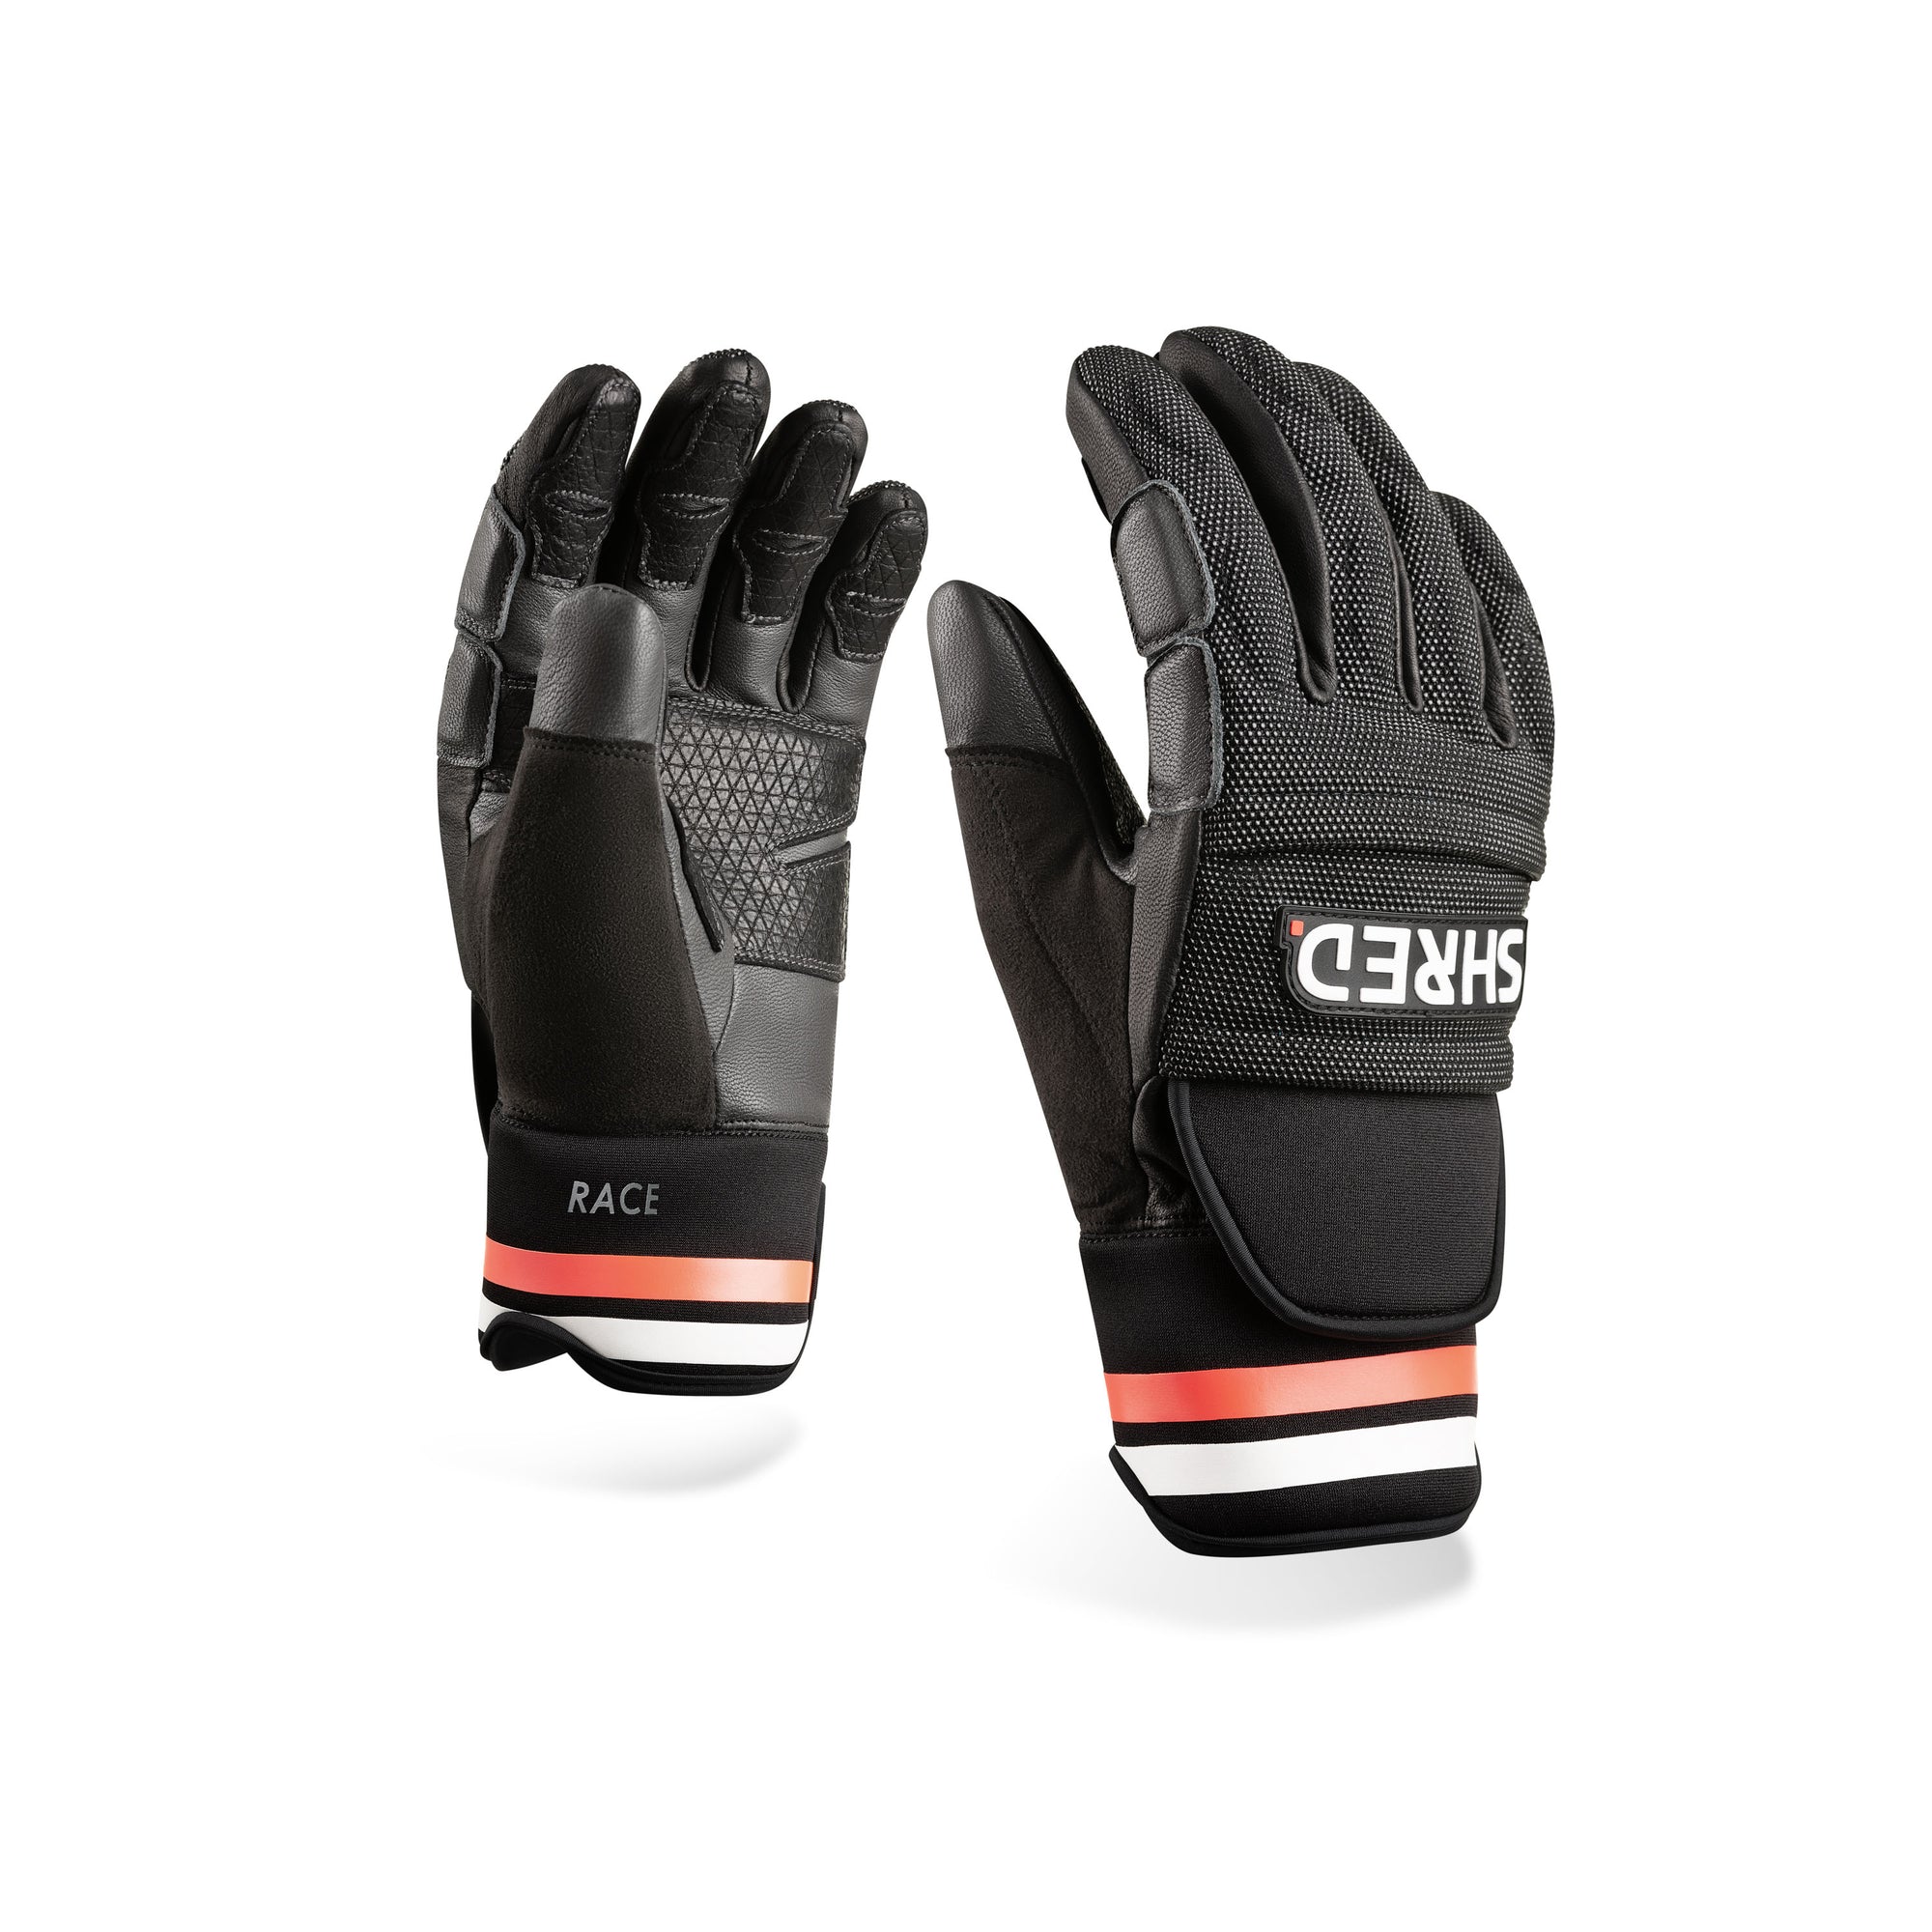 Ski Race Protective Gloves - Protective Gloves|BPRDGN13L,BPRDGN13M,BPRDGN13S,BPRDGN13XL,BPRDGN13XS